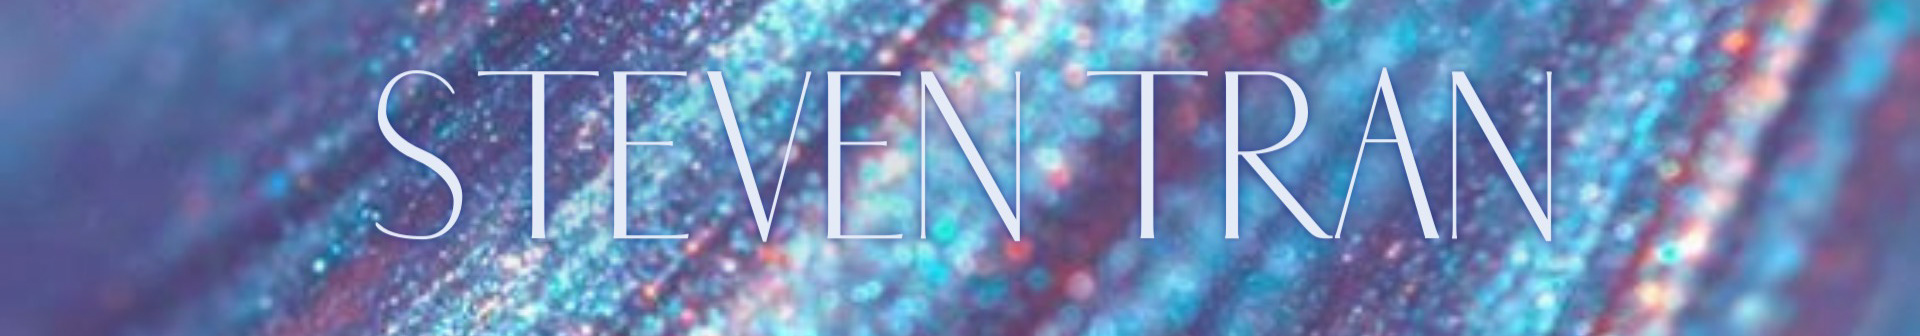 Steven Tran's profile banner